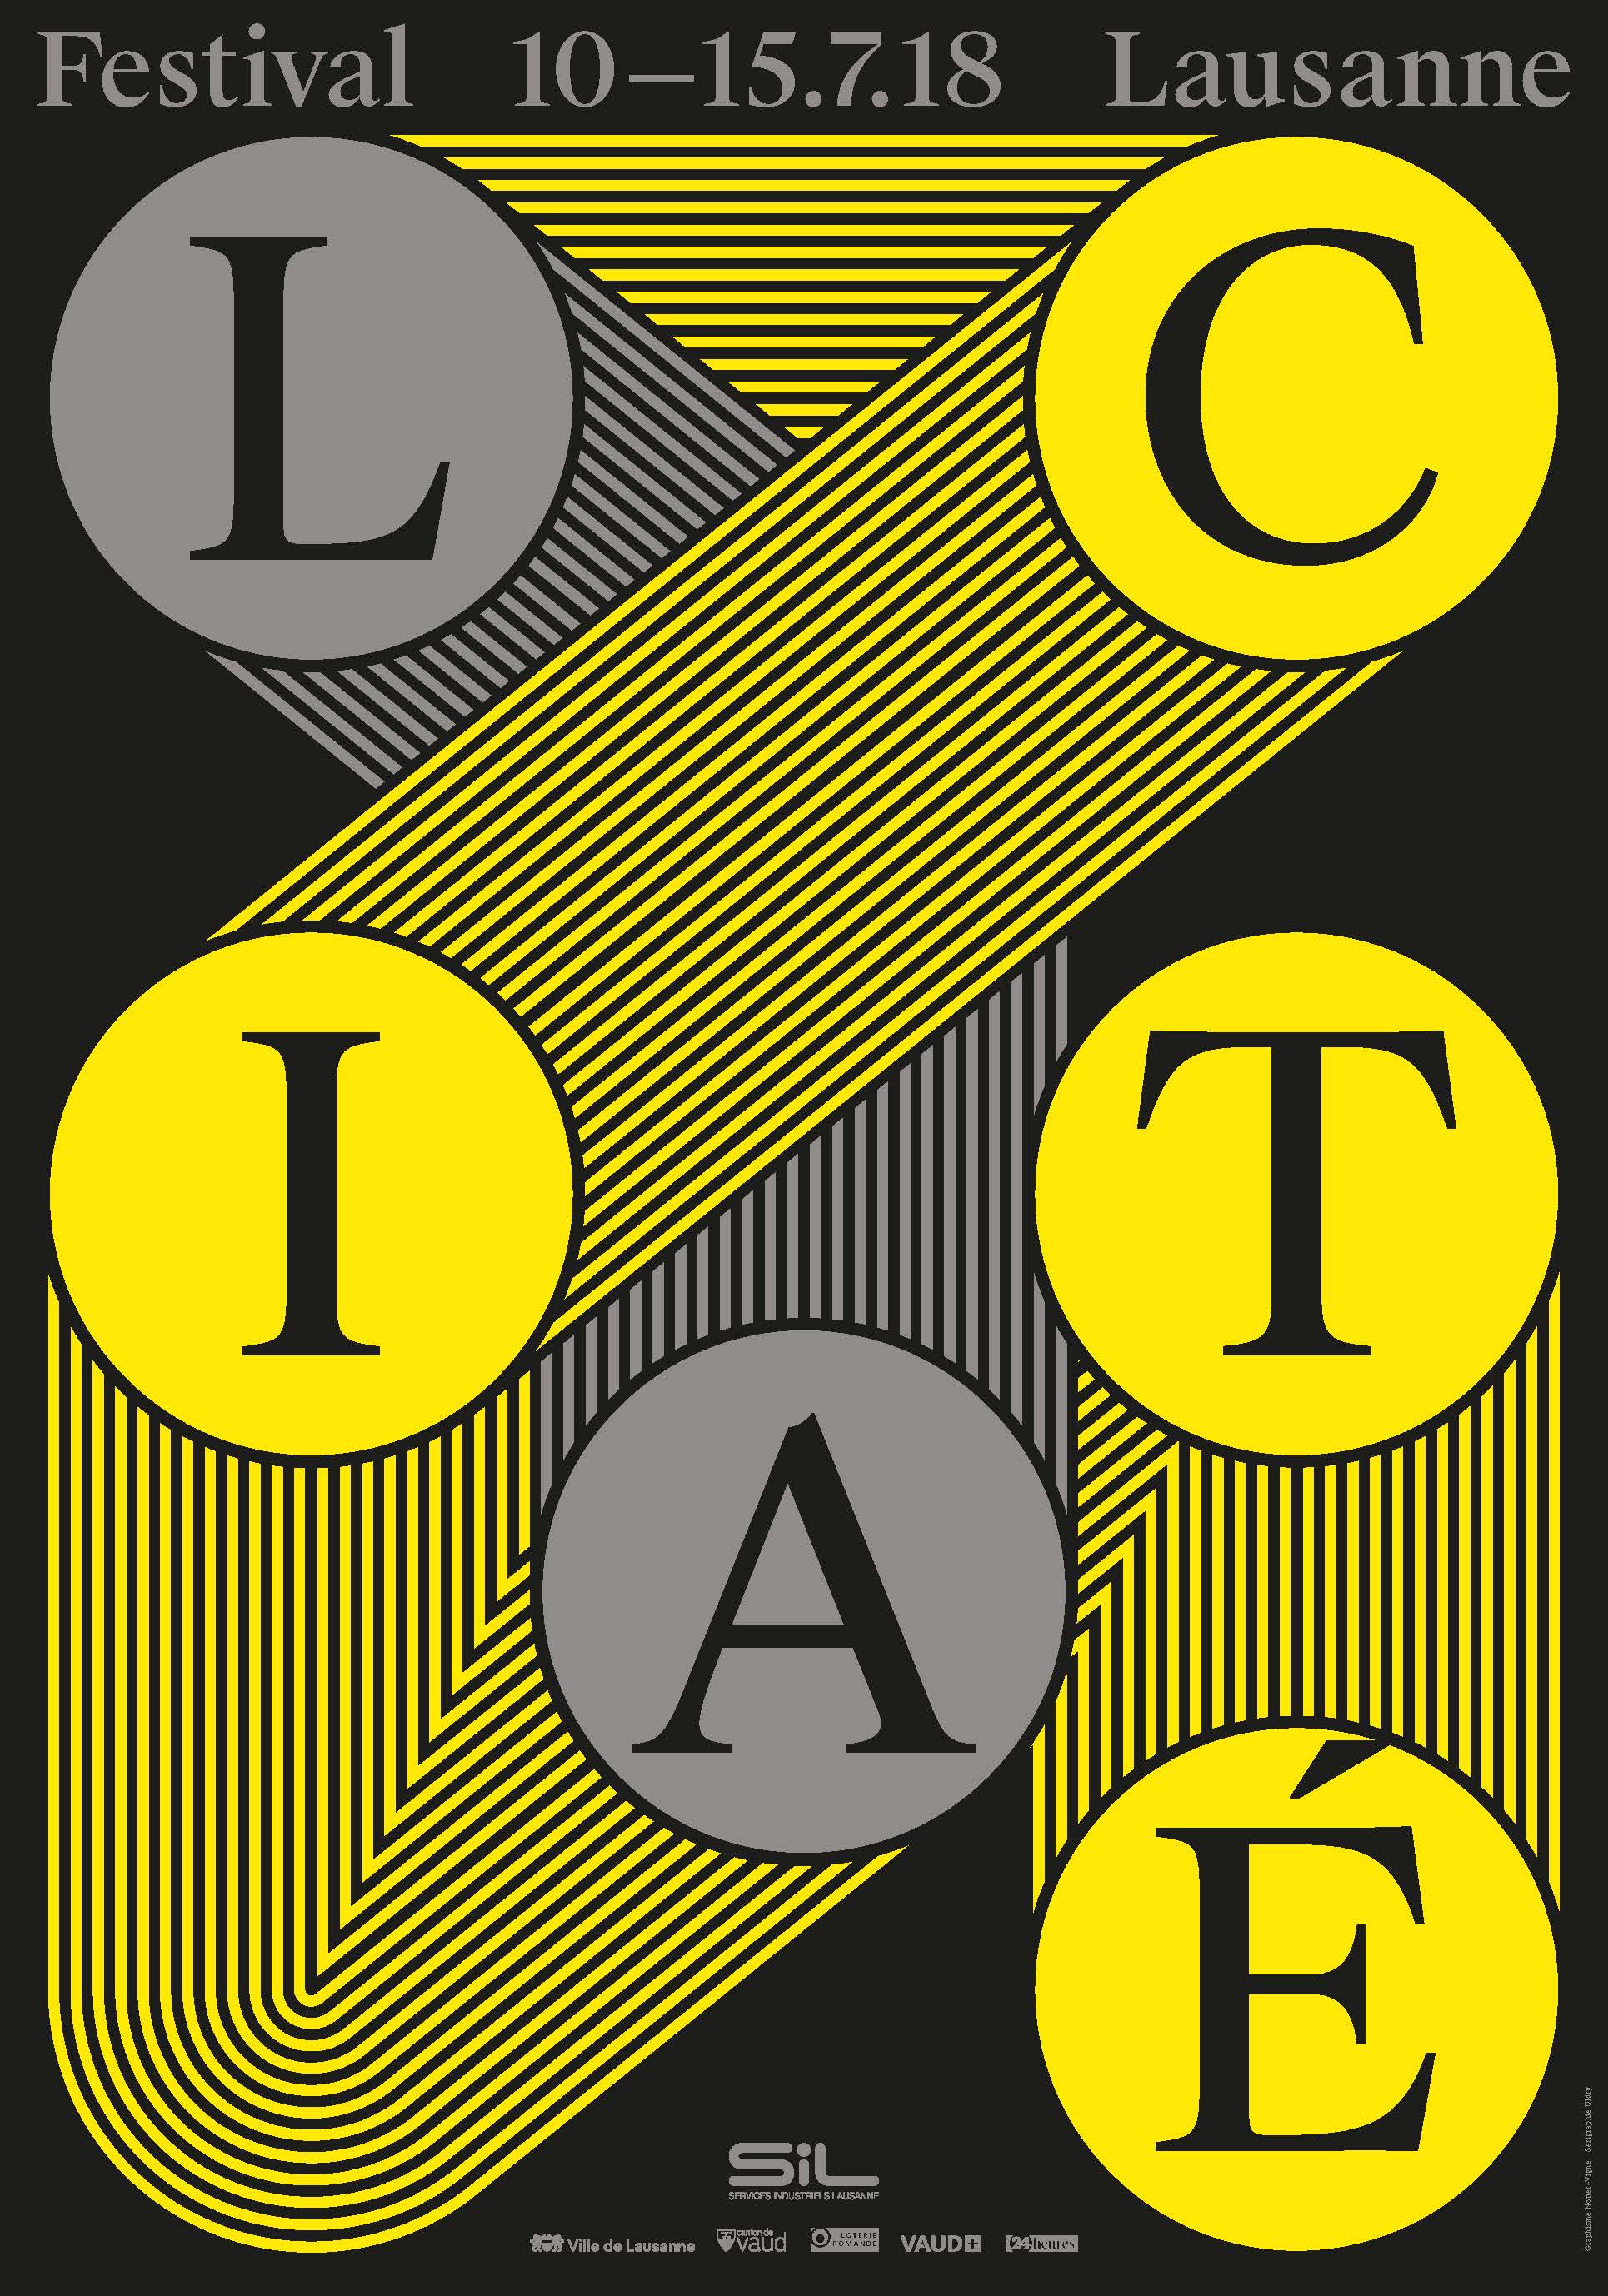 Poster of the Festival de la Cité Lausanne 2018